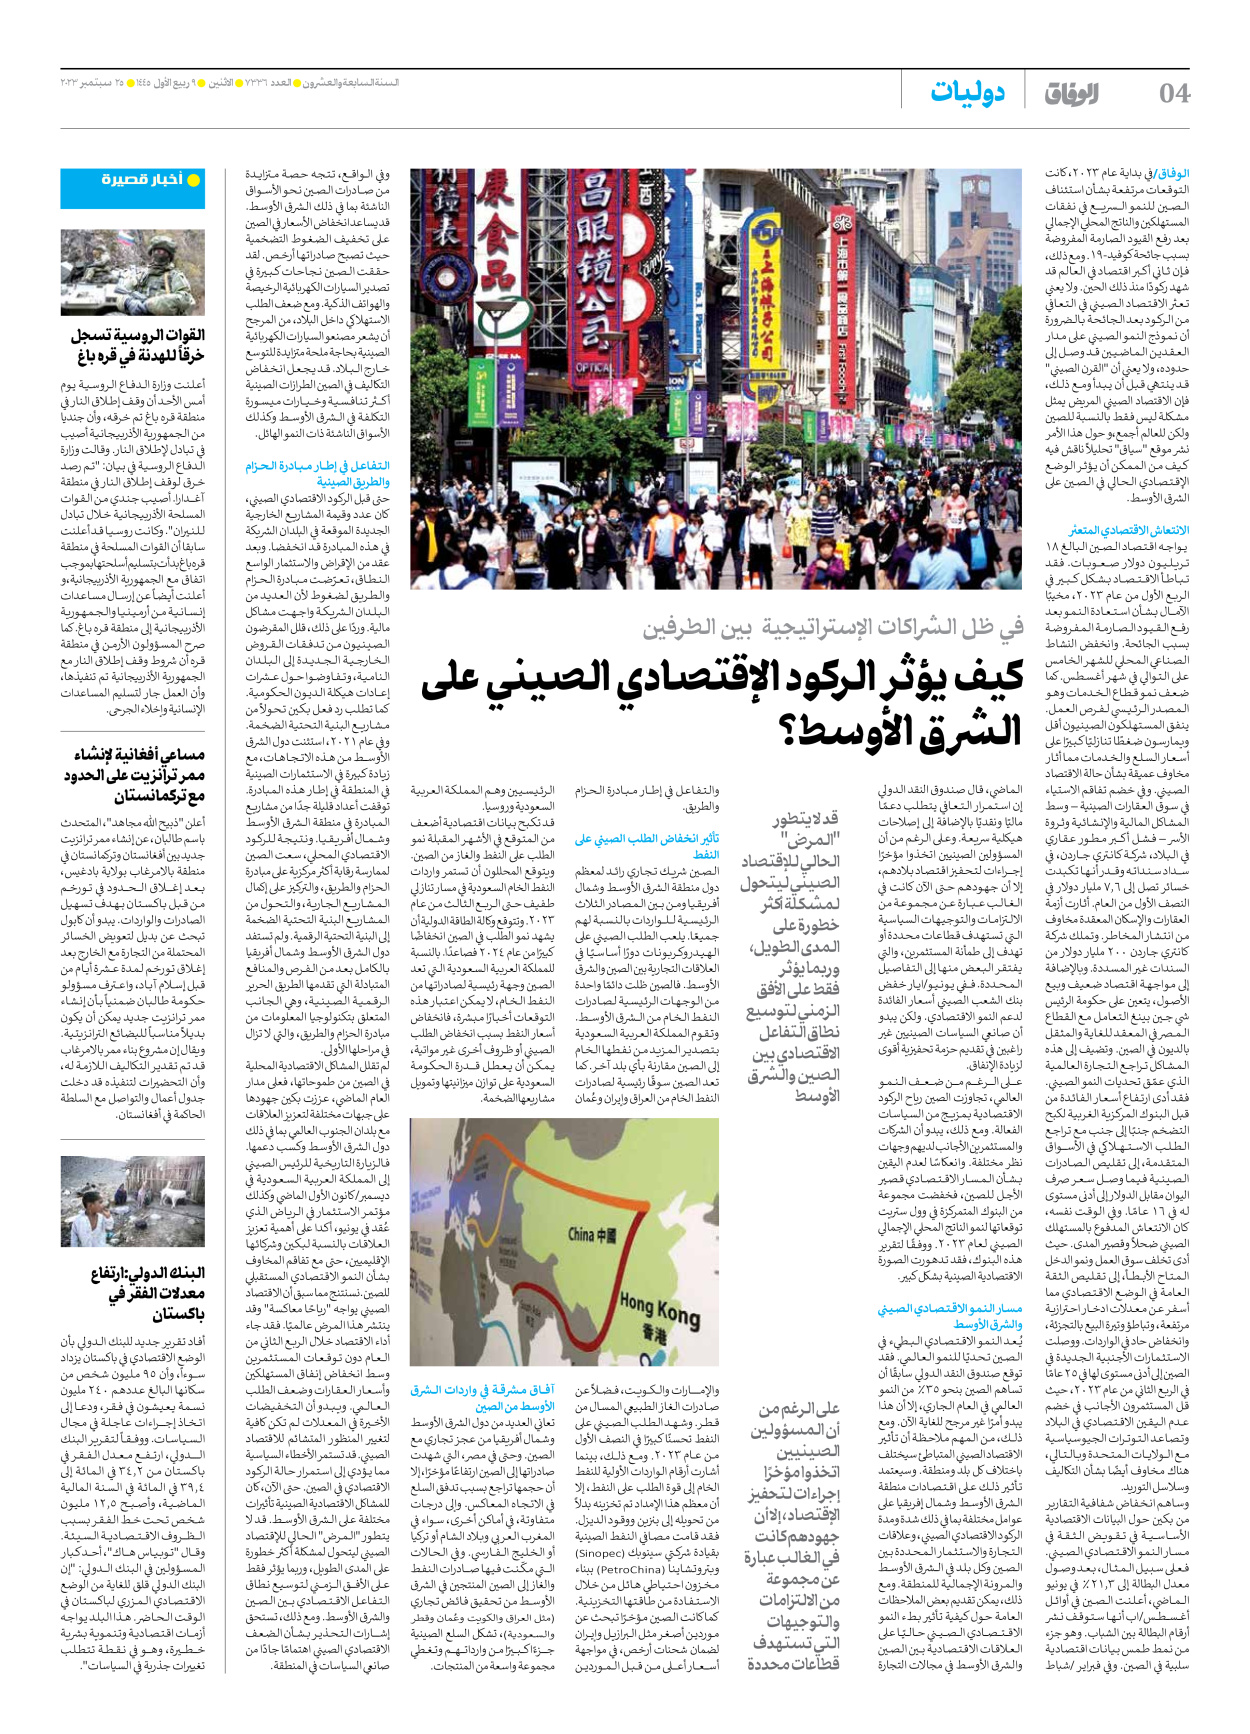 صحیفة ایران الدولیة الوفاق - العدد سبعة آلاف وثلاثمائة وستة وثلاثون - ٢٥ سبتمبر ٢٠٢٣ - الصفحة ٤